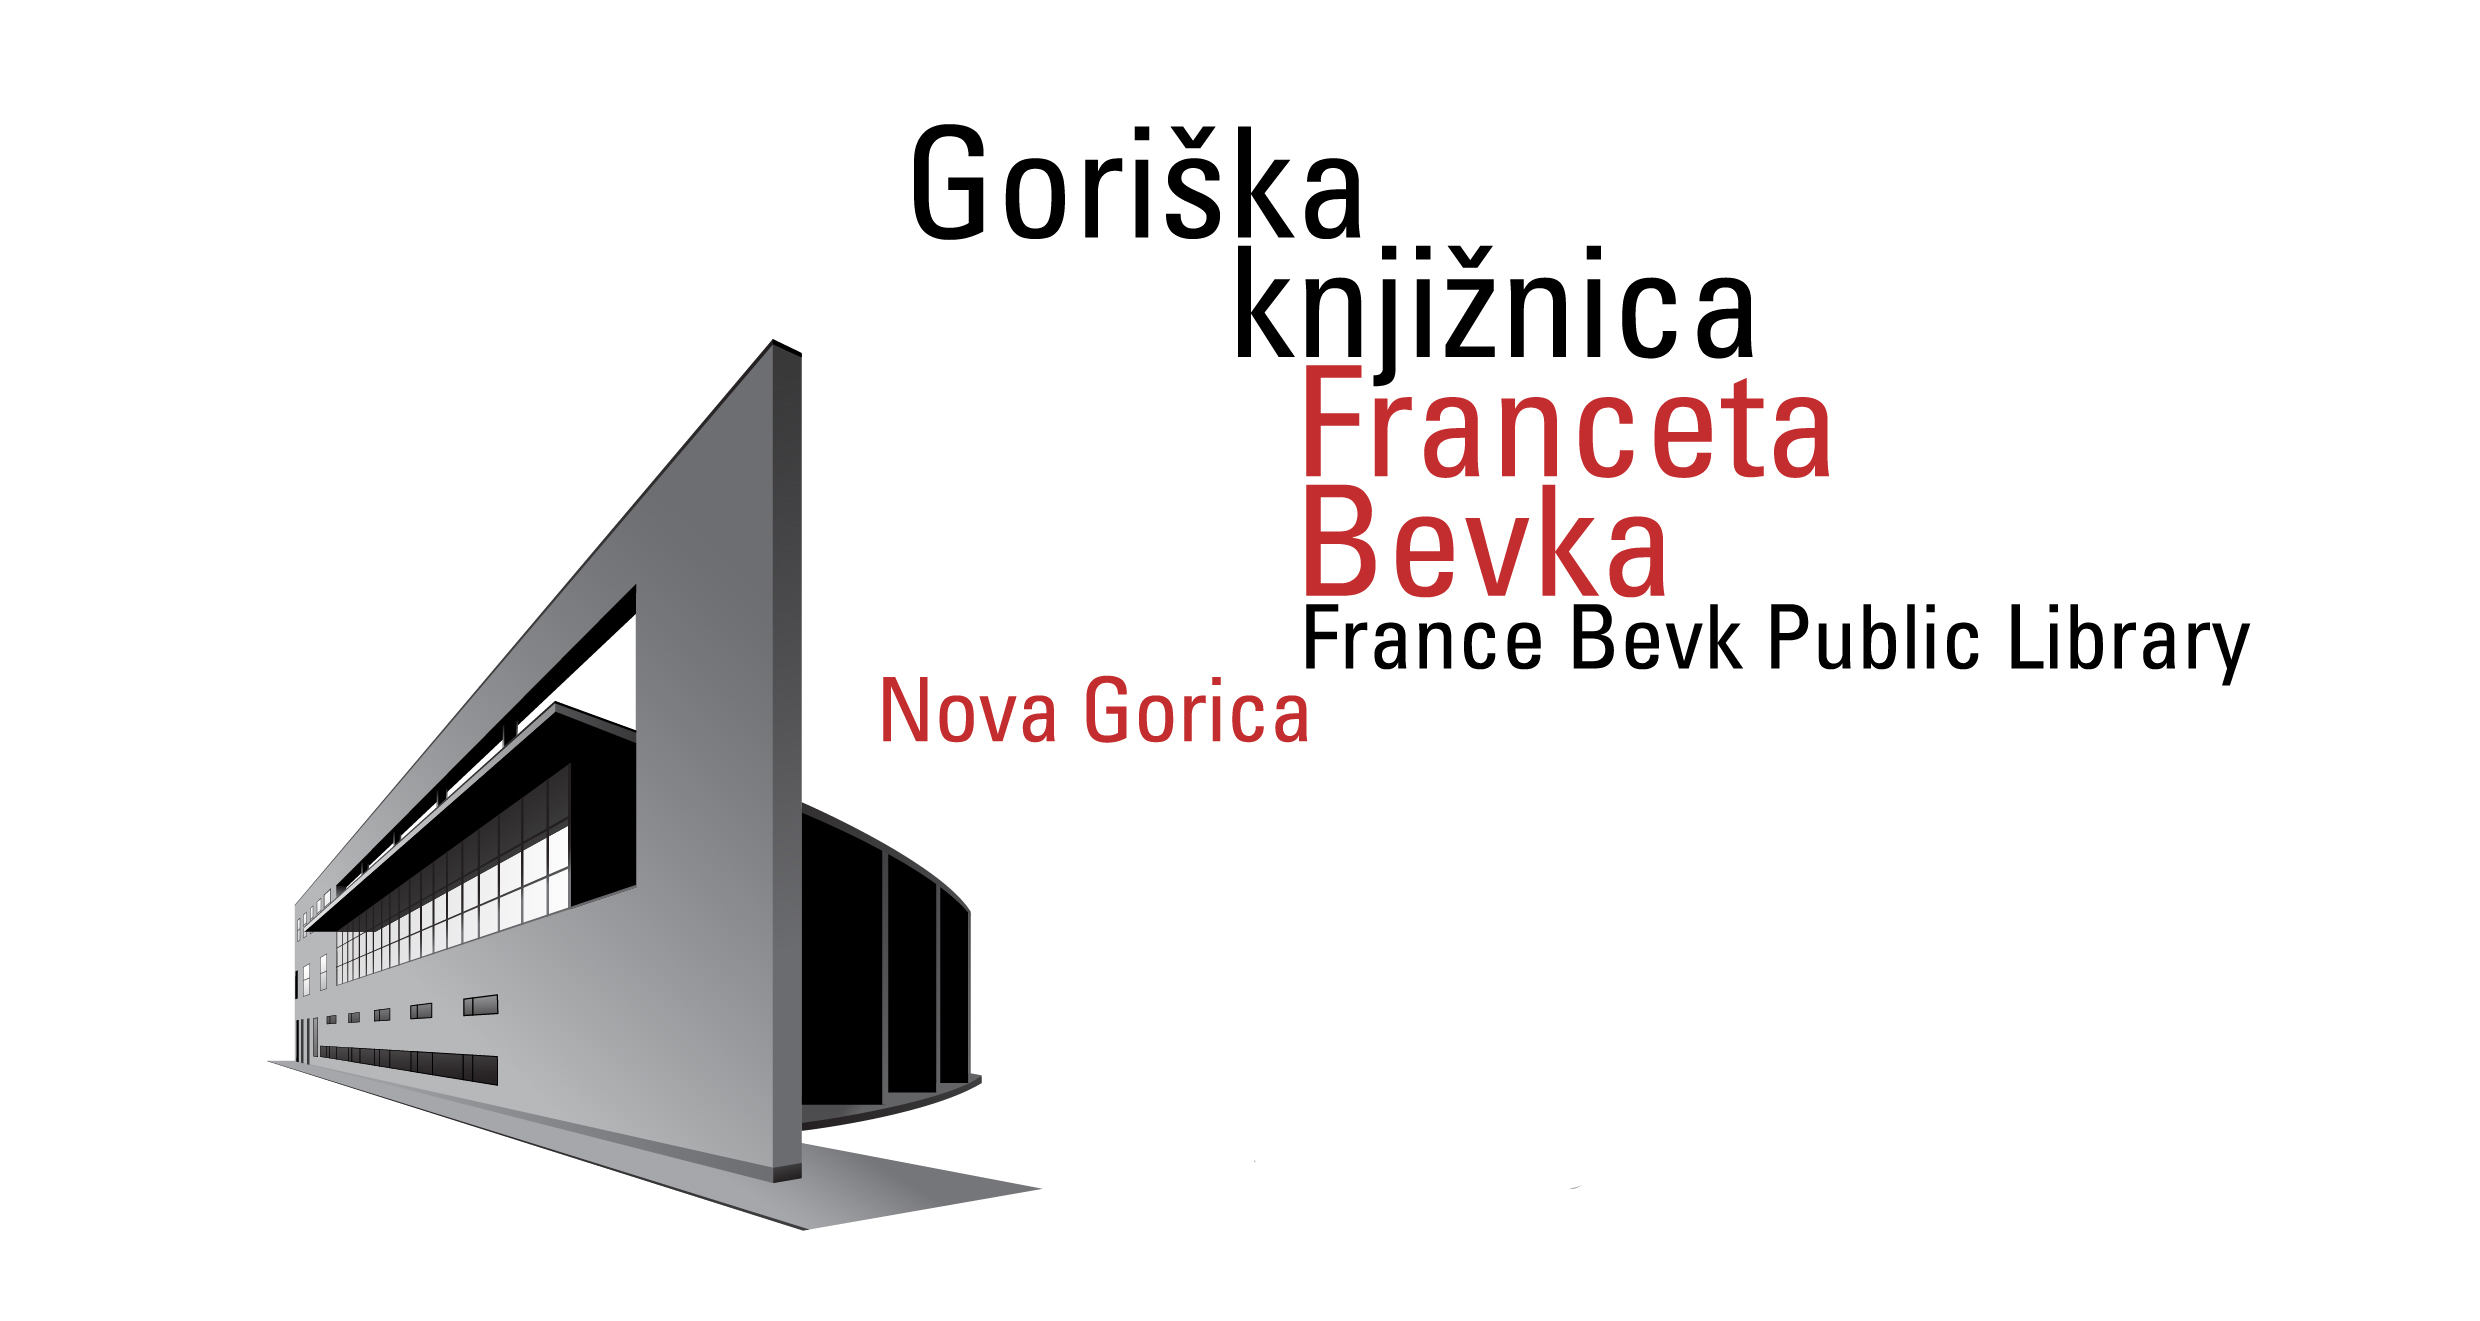 Goriška knjižnica Franceta Bevka